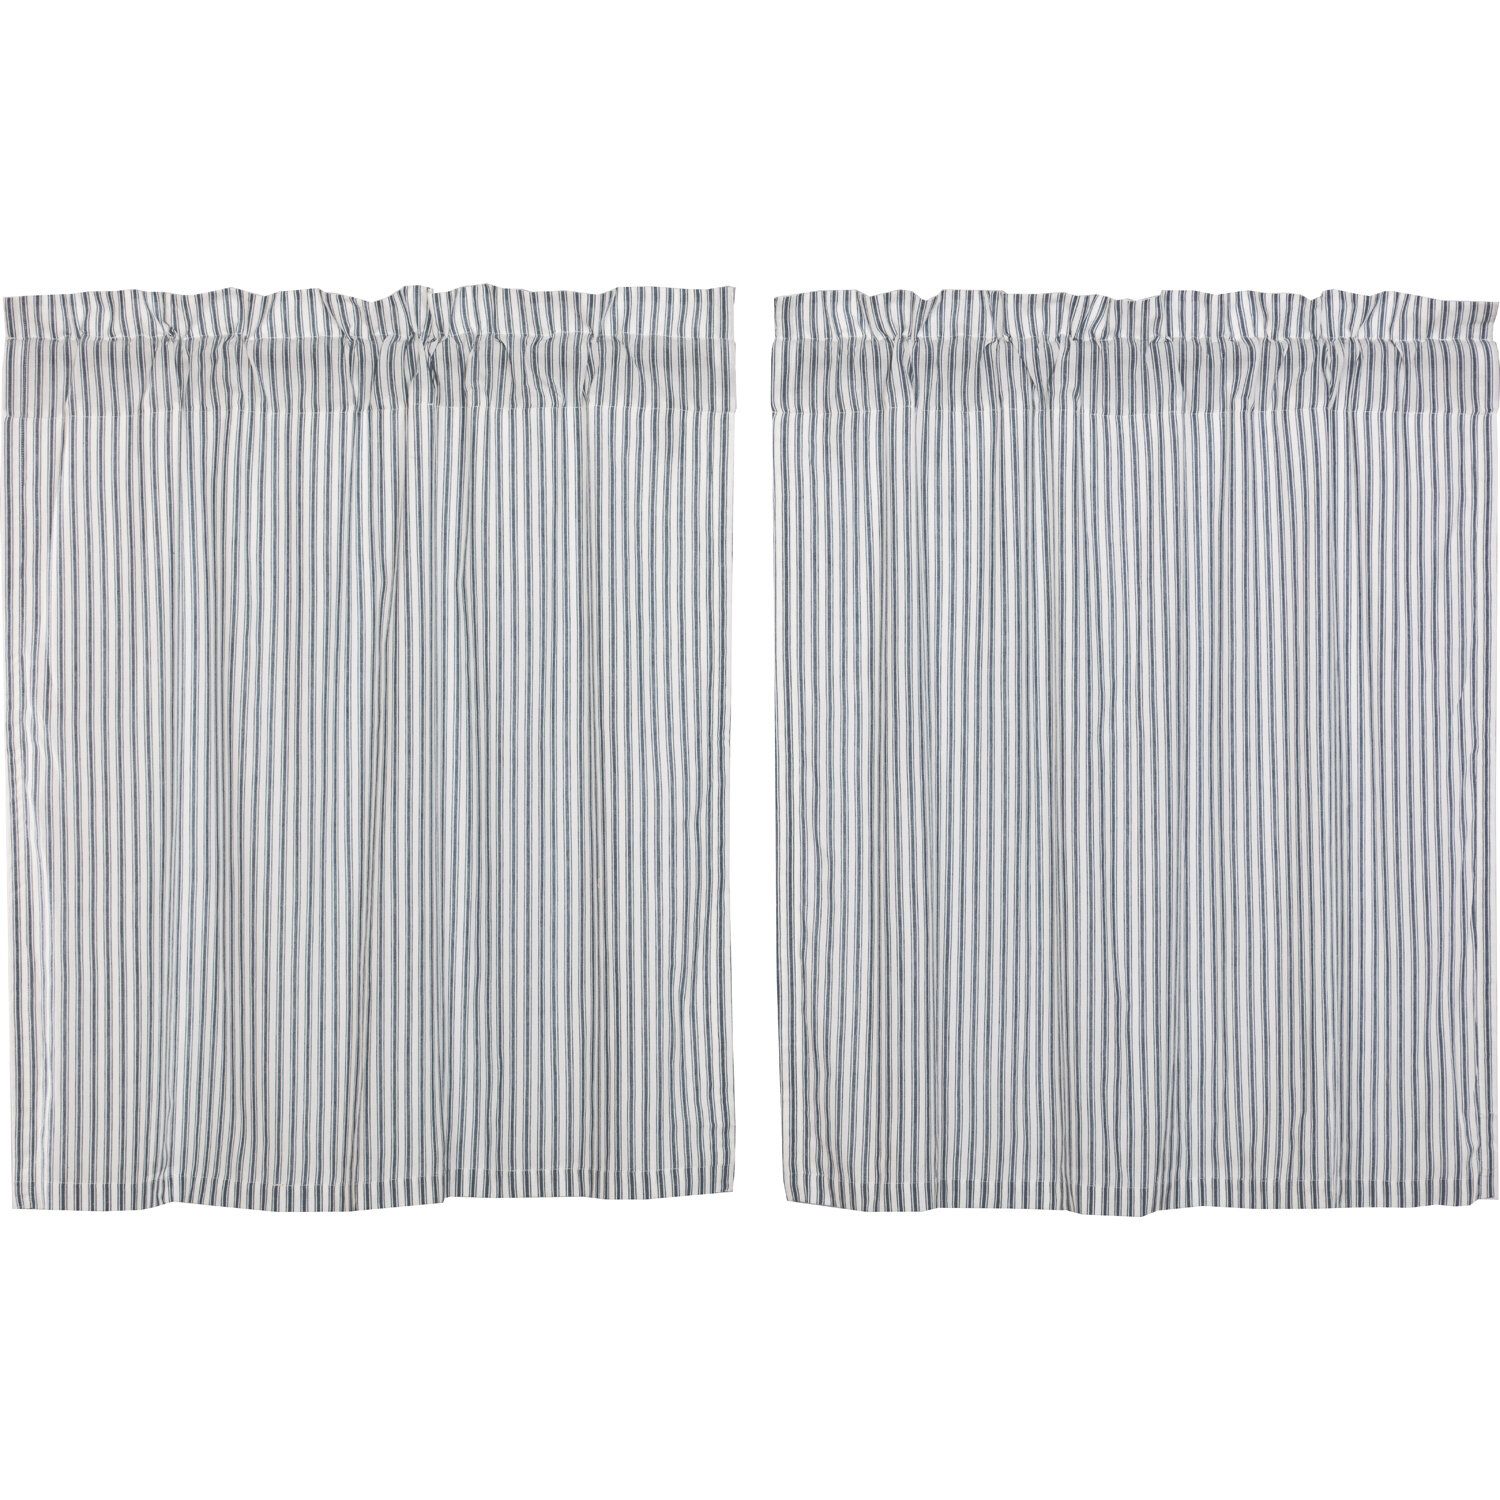 Surikova Ticking Stripe Tier Kitchen Curtain For Cotton Blend Grey Kitchen Curtain Tiers (View 16 of 20)